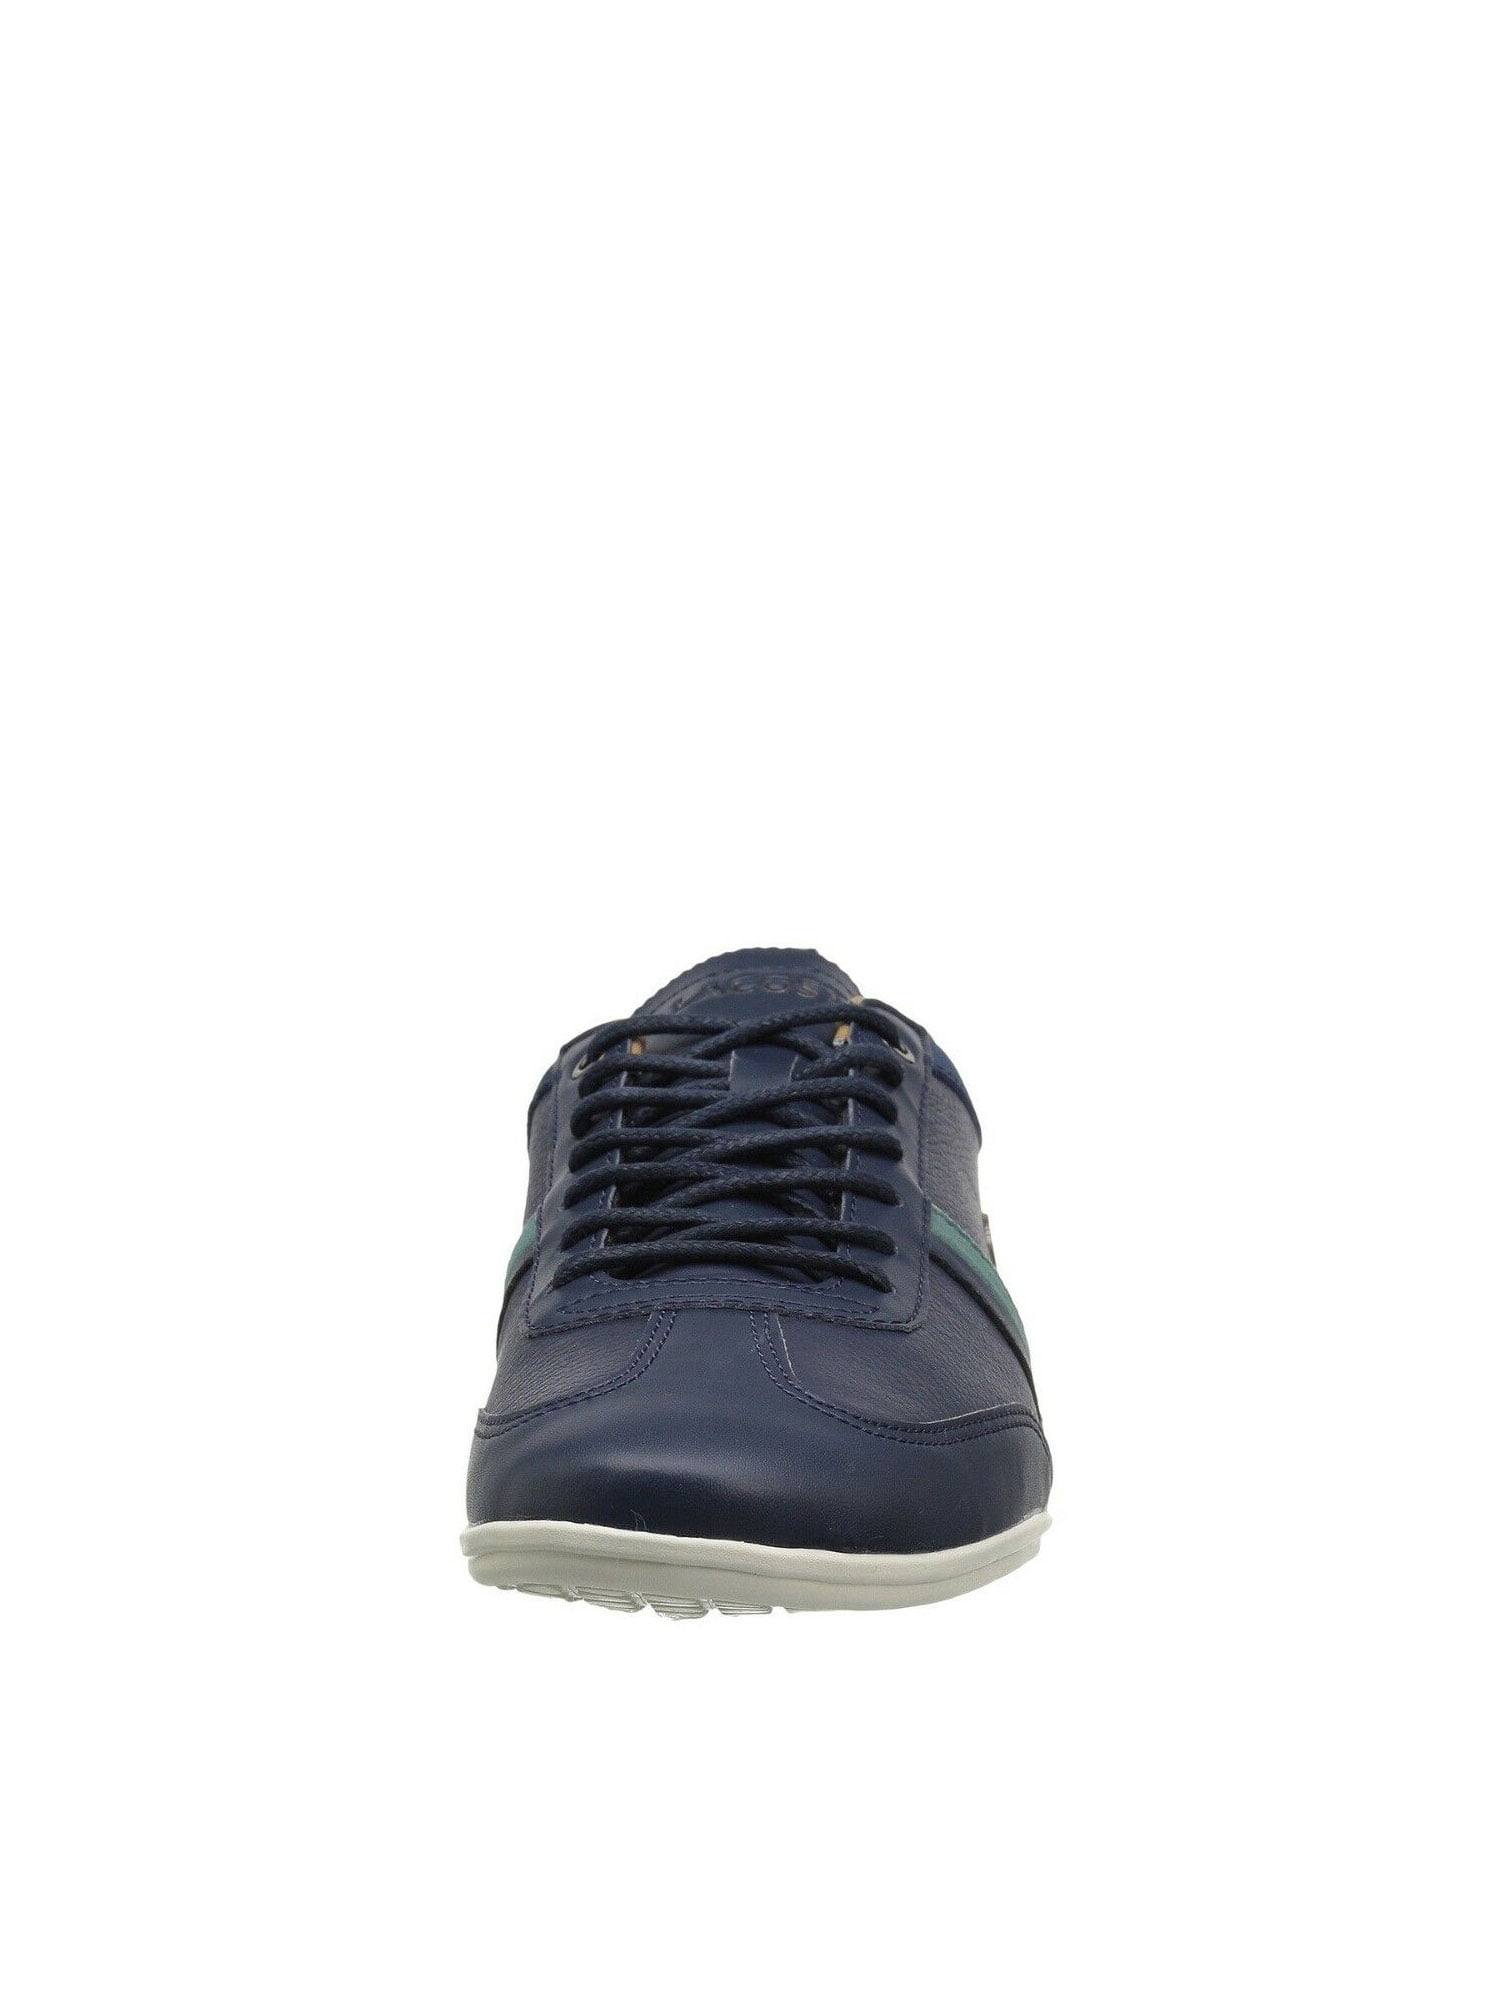 Lacoste Misano Sport 118 Navy Green Men's Lace Sneaker 35CAM00802S3